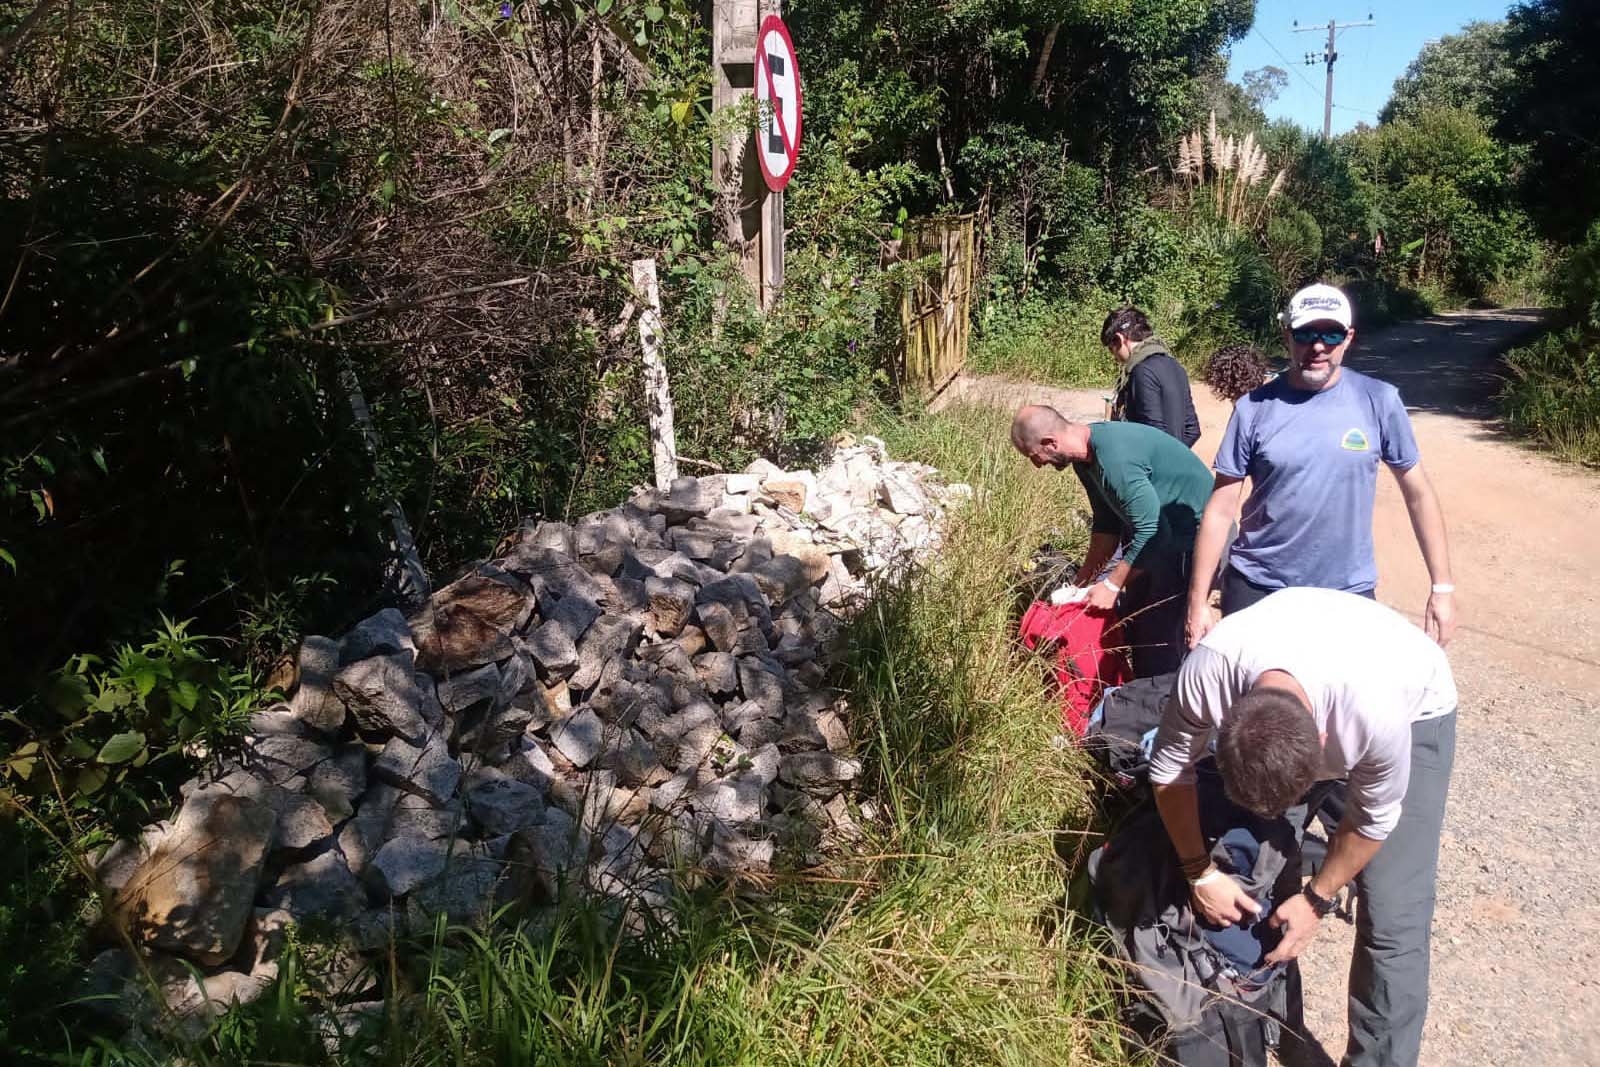 Mutirão voluntário com apoio técnico do Instituto Água e Terra (IAT) vai restaurar e revitalizar a trilha que dá acesso ao Morro Pão de Loth, um dos principais atrativos do Parque Estadual da Serra da Baitaca